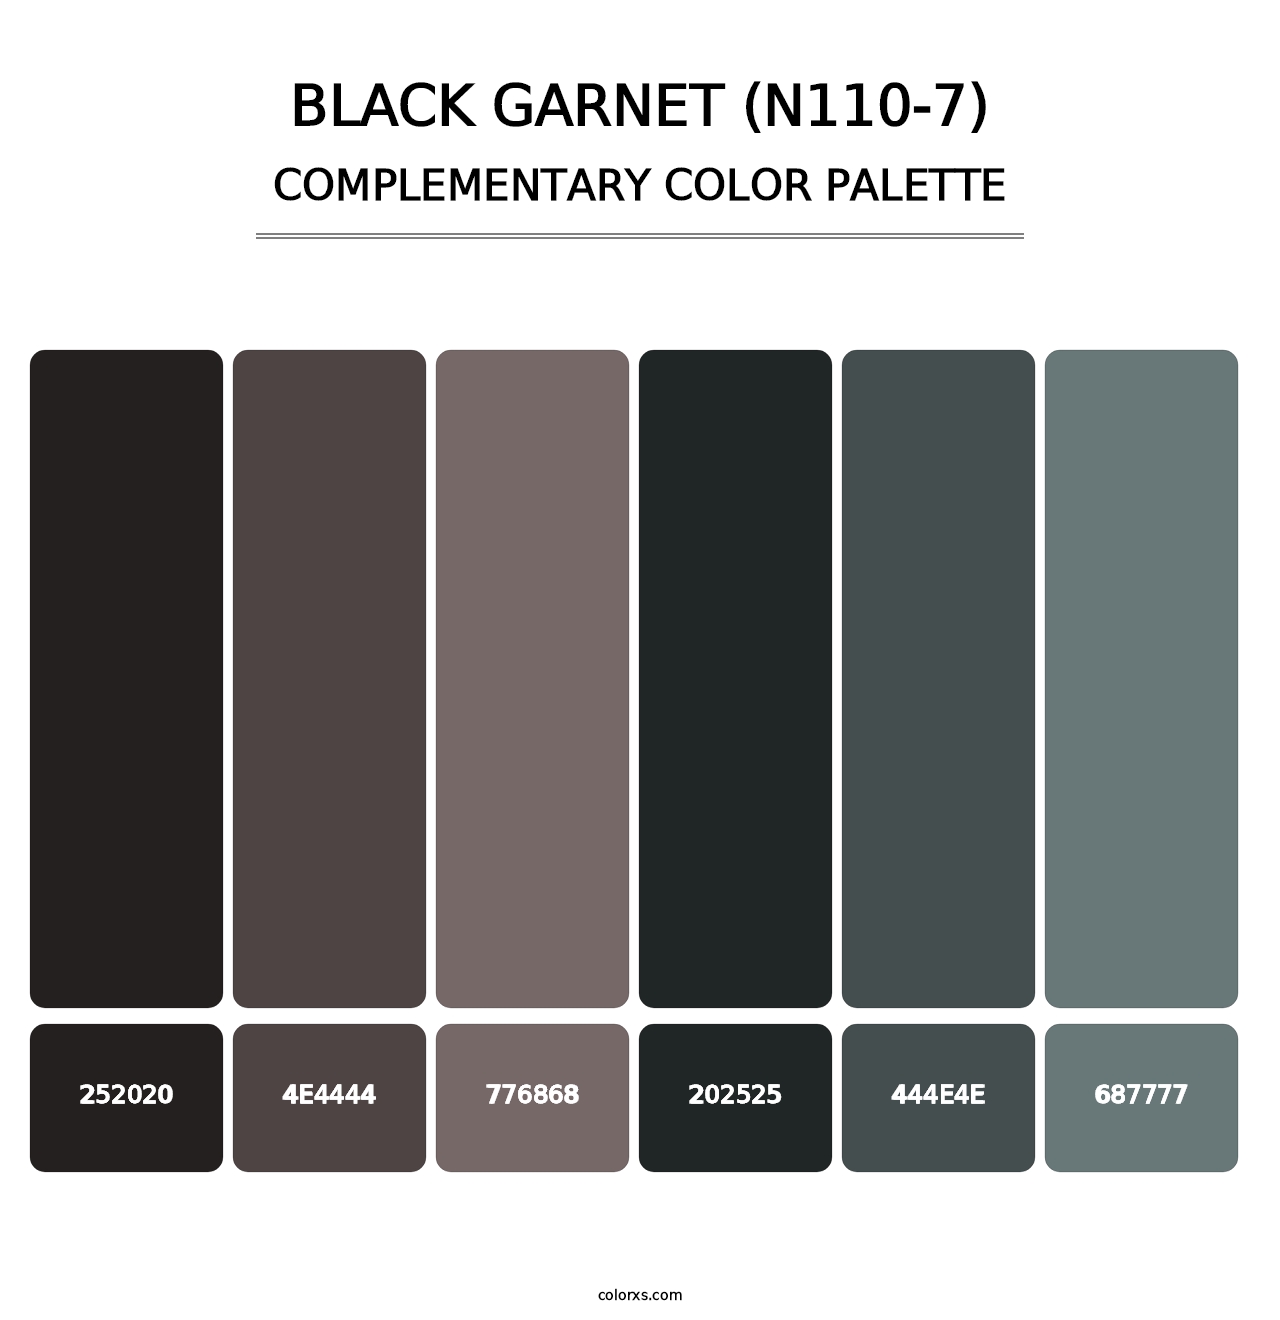 Black Garnet (N110-7) - Complementary Color Palette